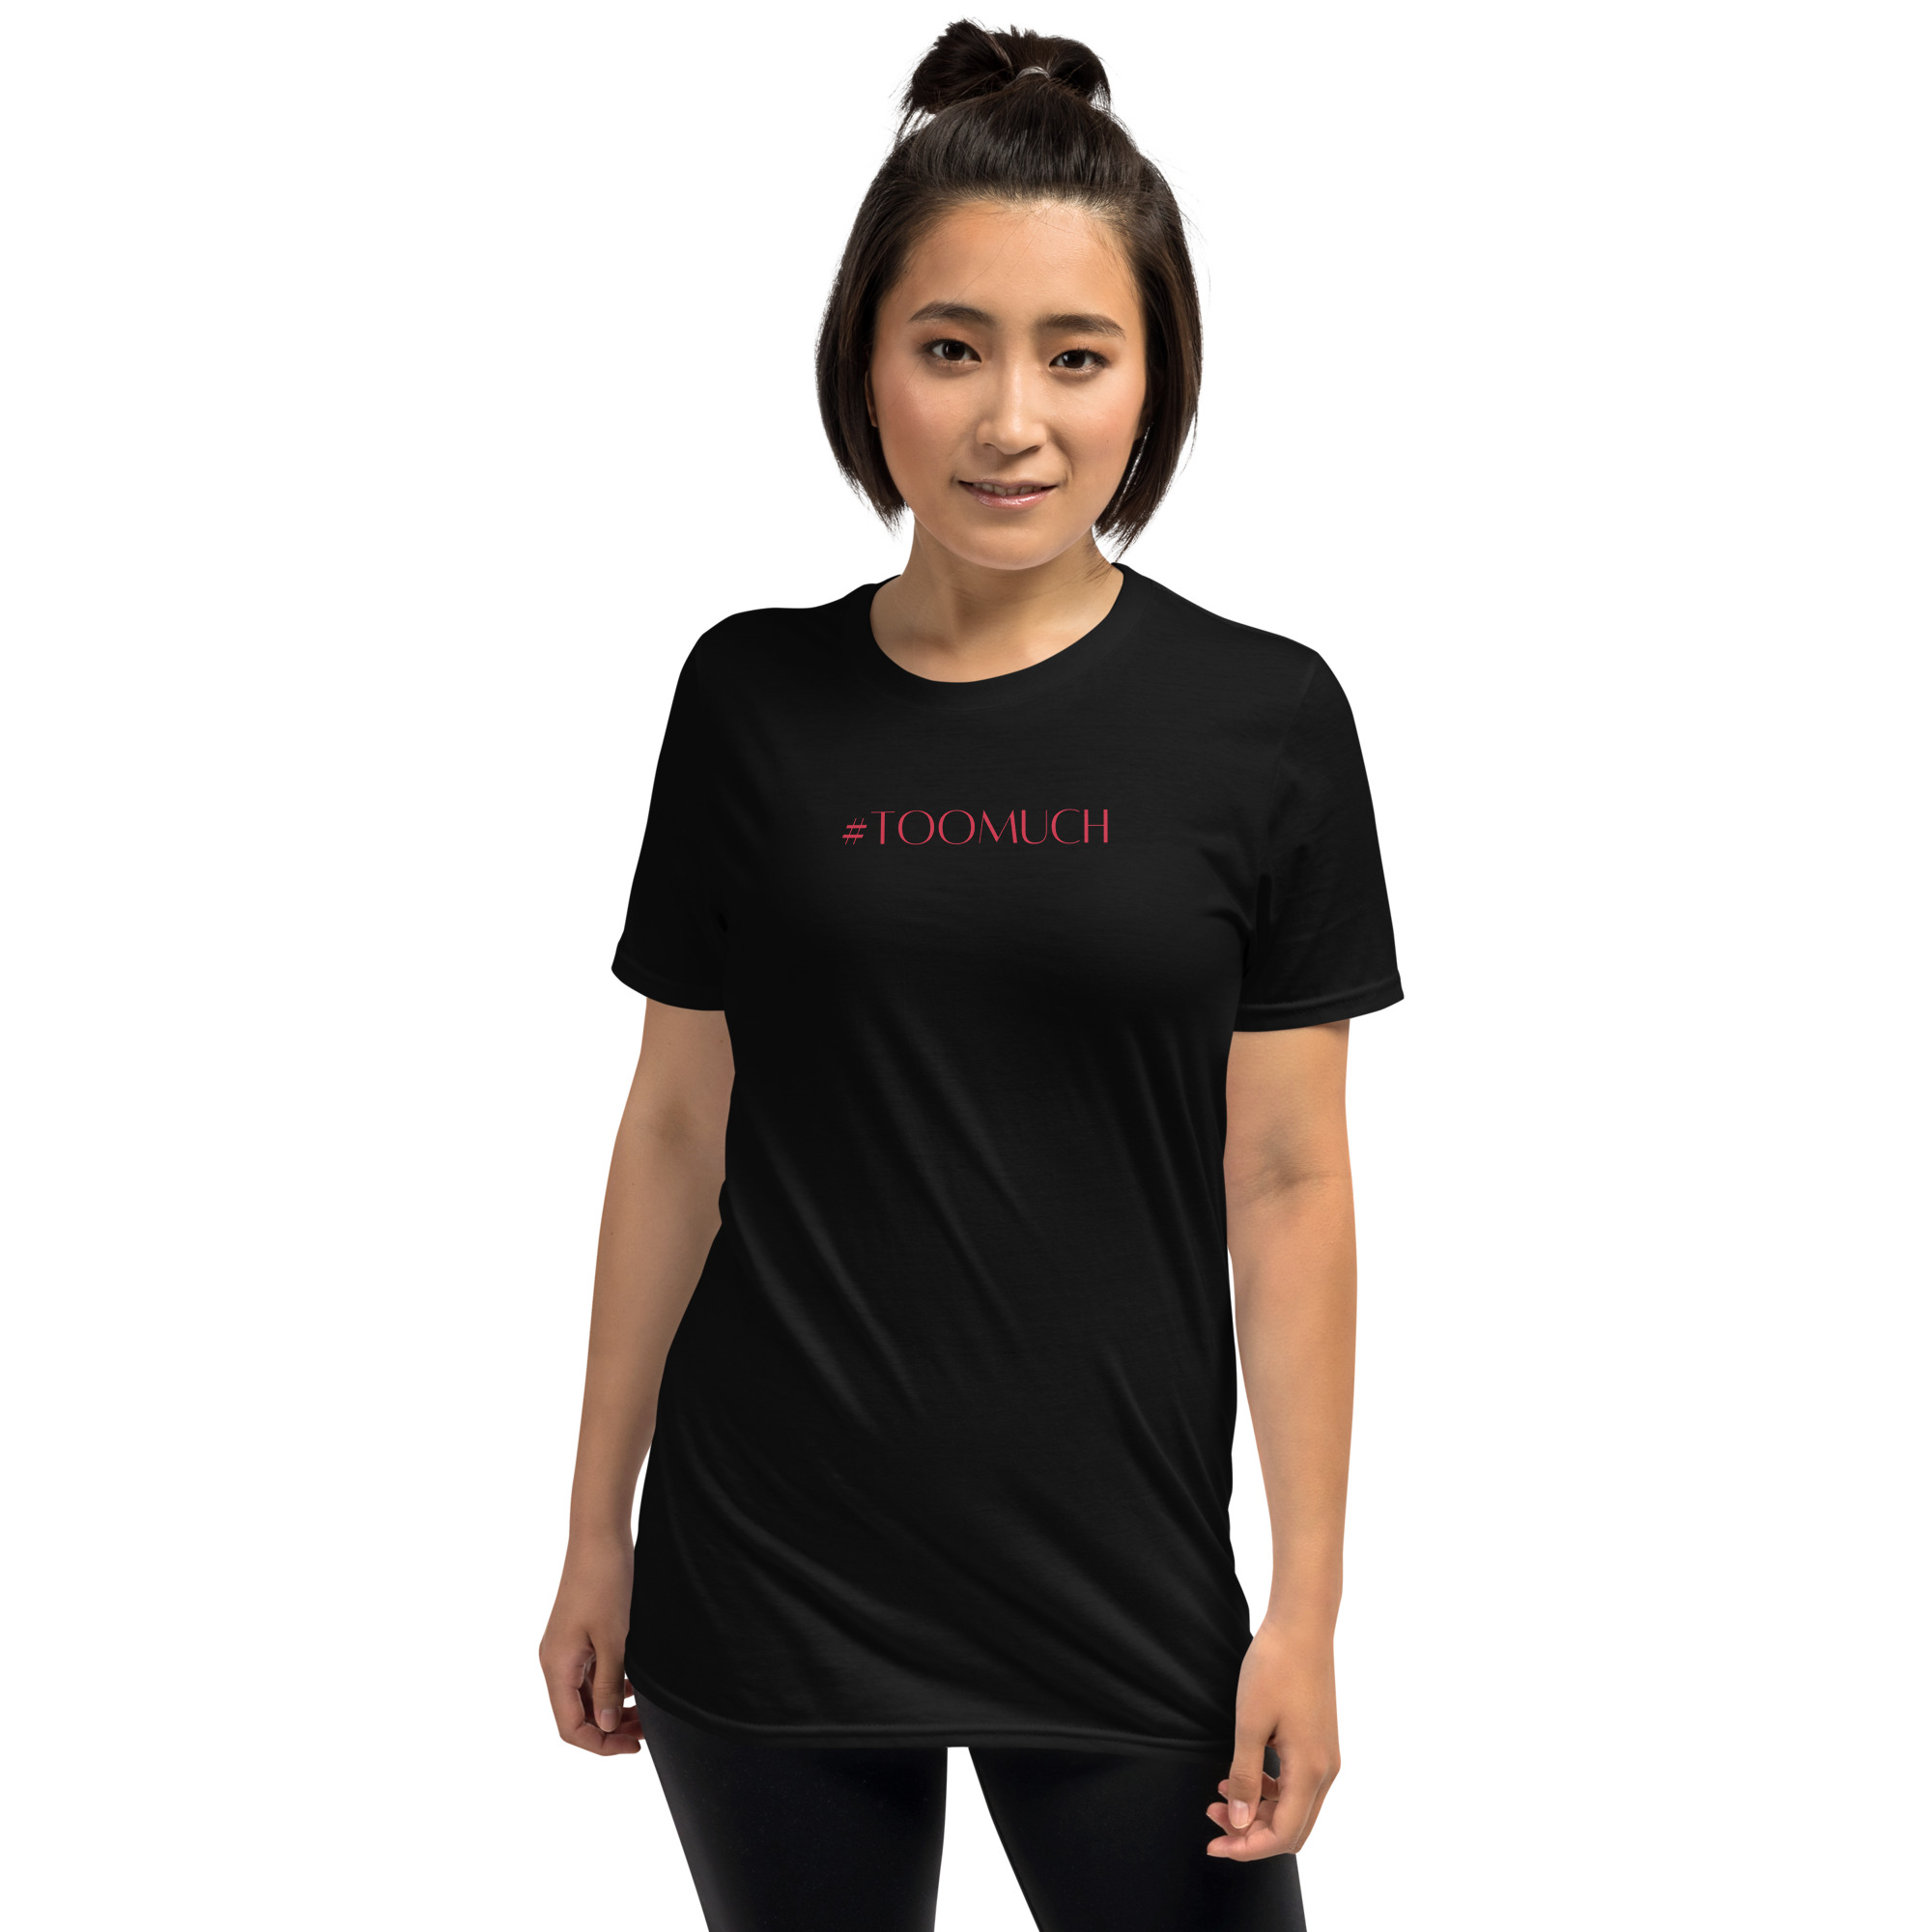 unisex-basic-softstyle-t-shirt-black-front-6363eb3021244.jpg